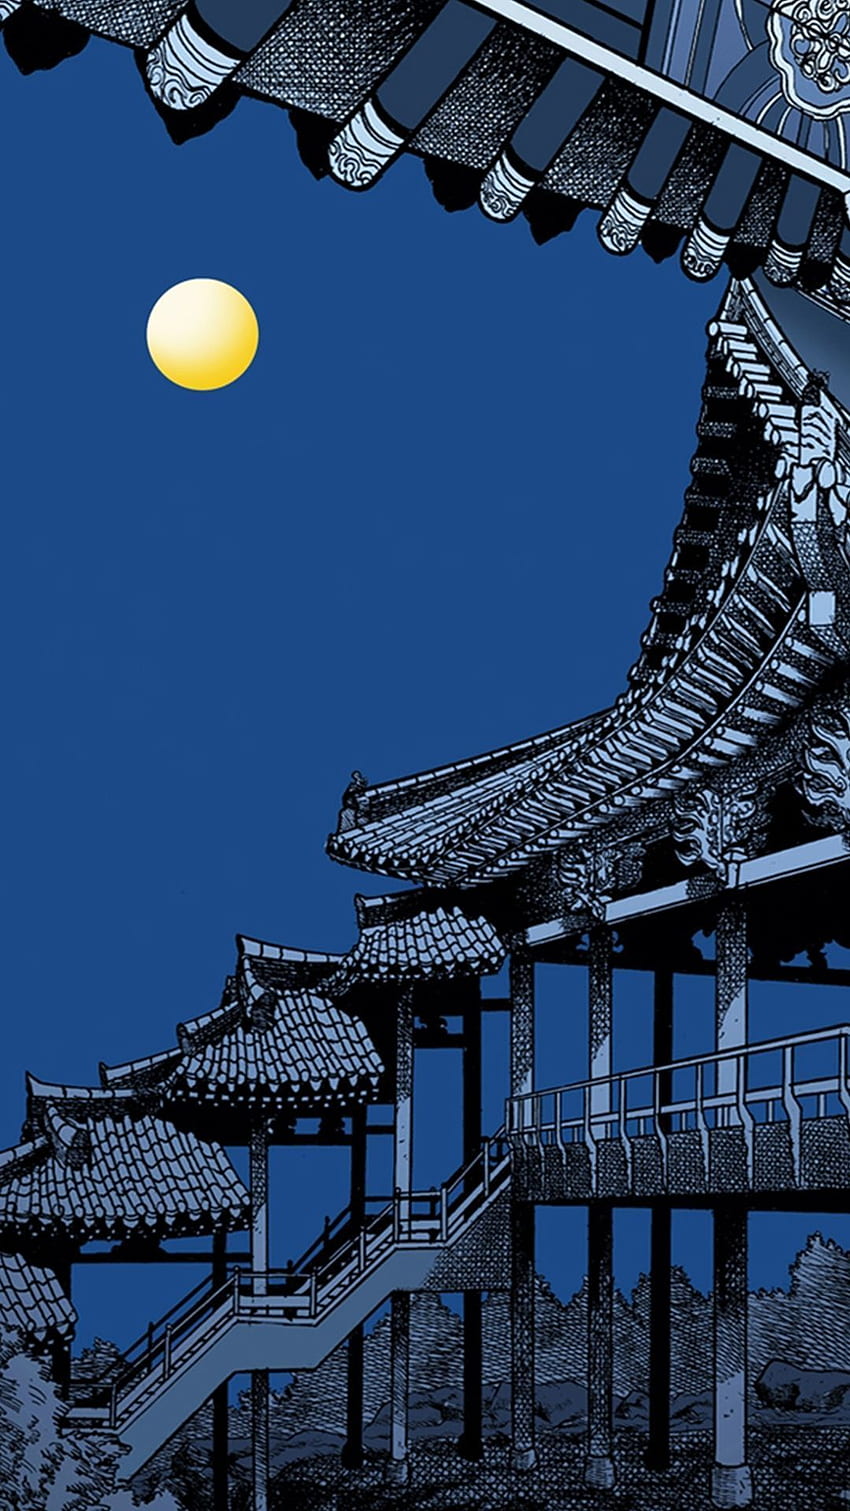 Chinese Wallpaper Images - Free Download on Freepik